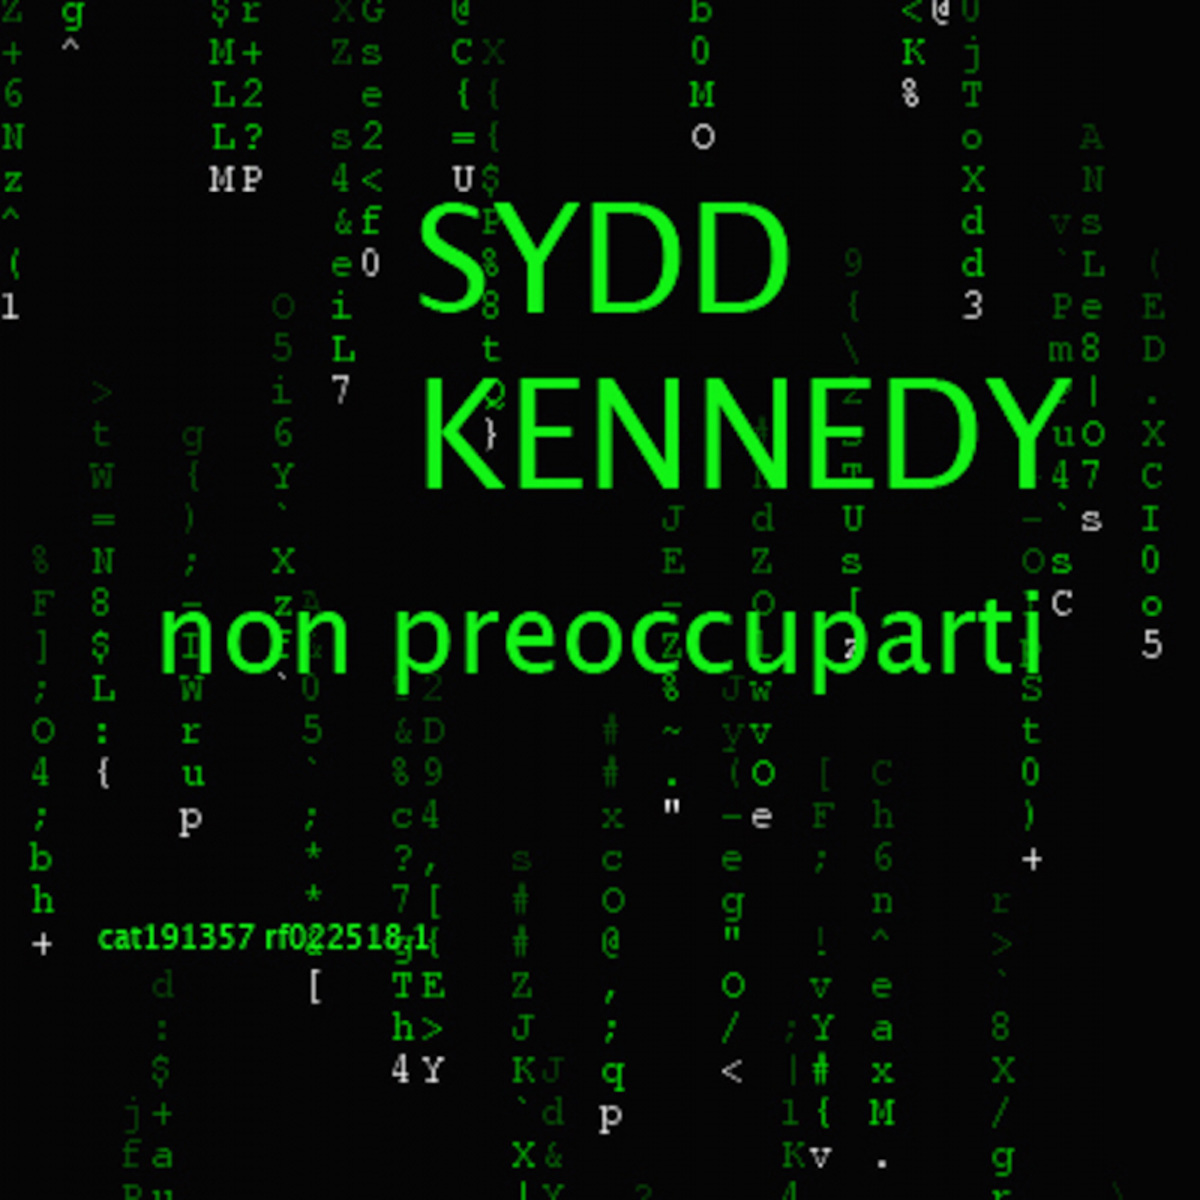 Sydd Kennedy - non preoccuparti / MDCCCVI music